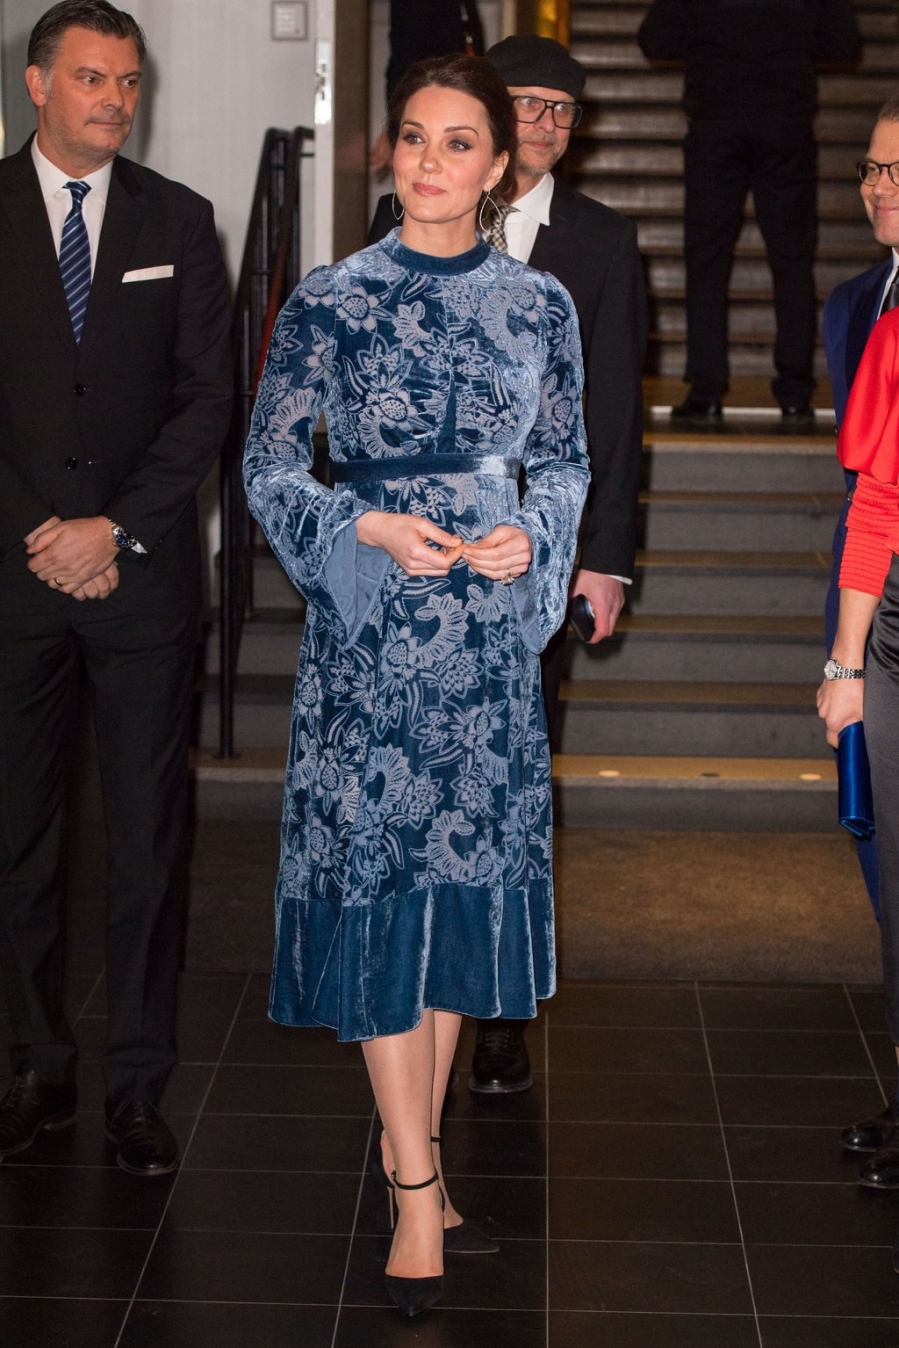 Ở các sự kiện trong nhà, vợ của hoàng tử William thường xuyên chọn kiểu tóc búi thấp, đeo khuyên tai dài để trông gọn gàng và quý phái hơn. Trong chuyến thăm bảo tàng ở Thụy Điển, công nương Kate chọn chiếc váy nhung dáng xòe màu xanh dương với họa tiết hoa chìm của thương hiệu Erdem .